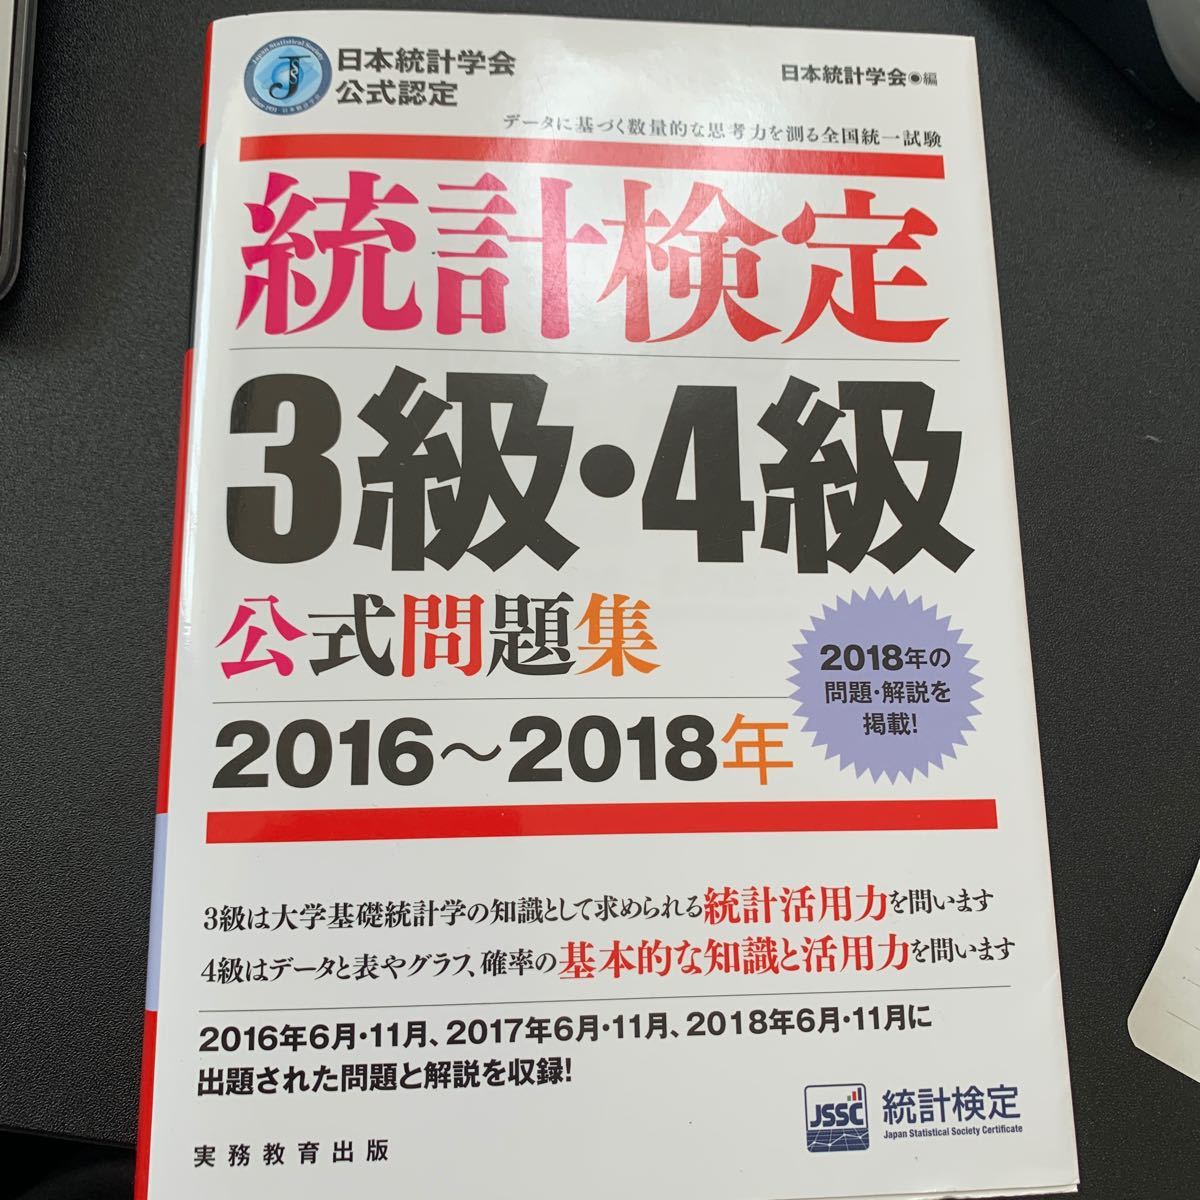  統計検定3級4級公式問題集 日本統計学会公式認定 2016〜2018年